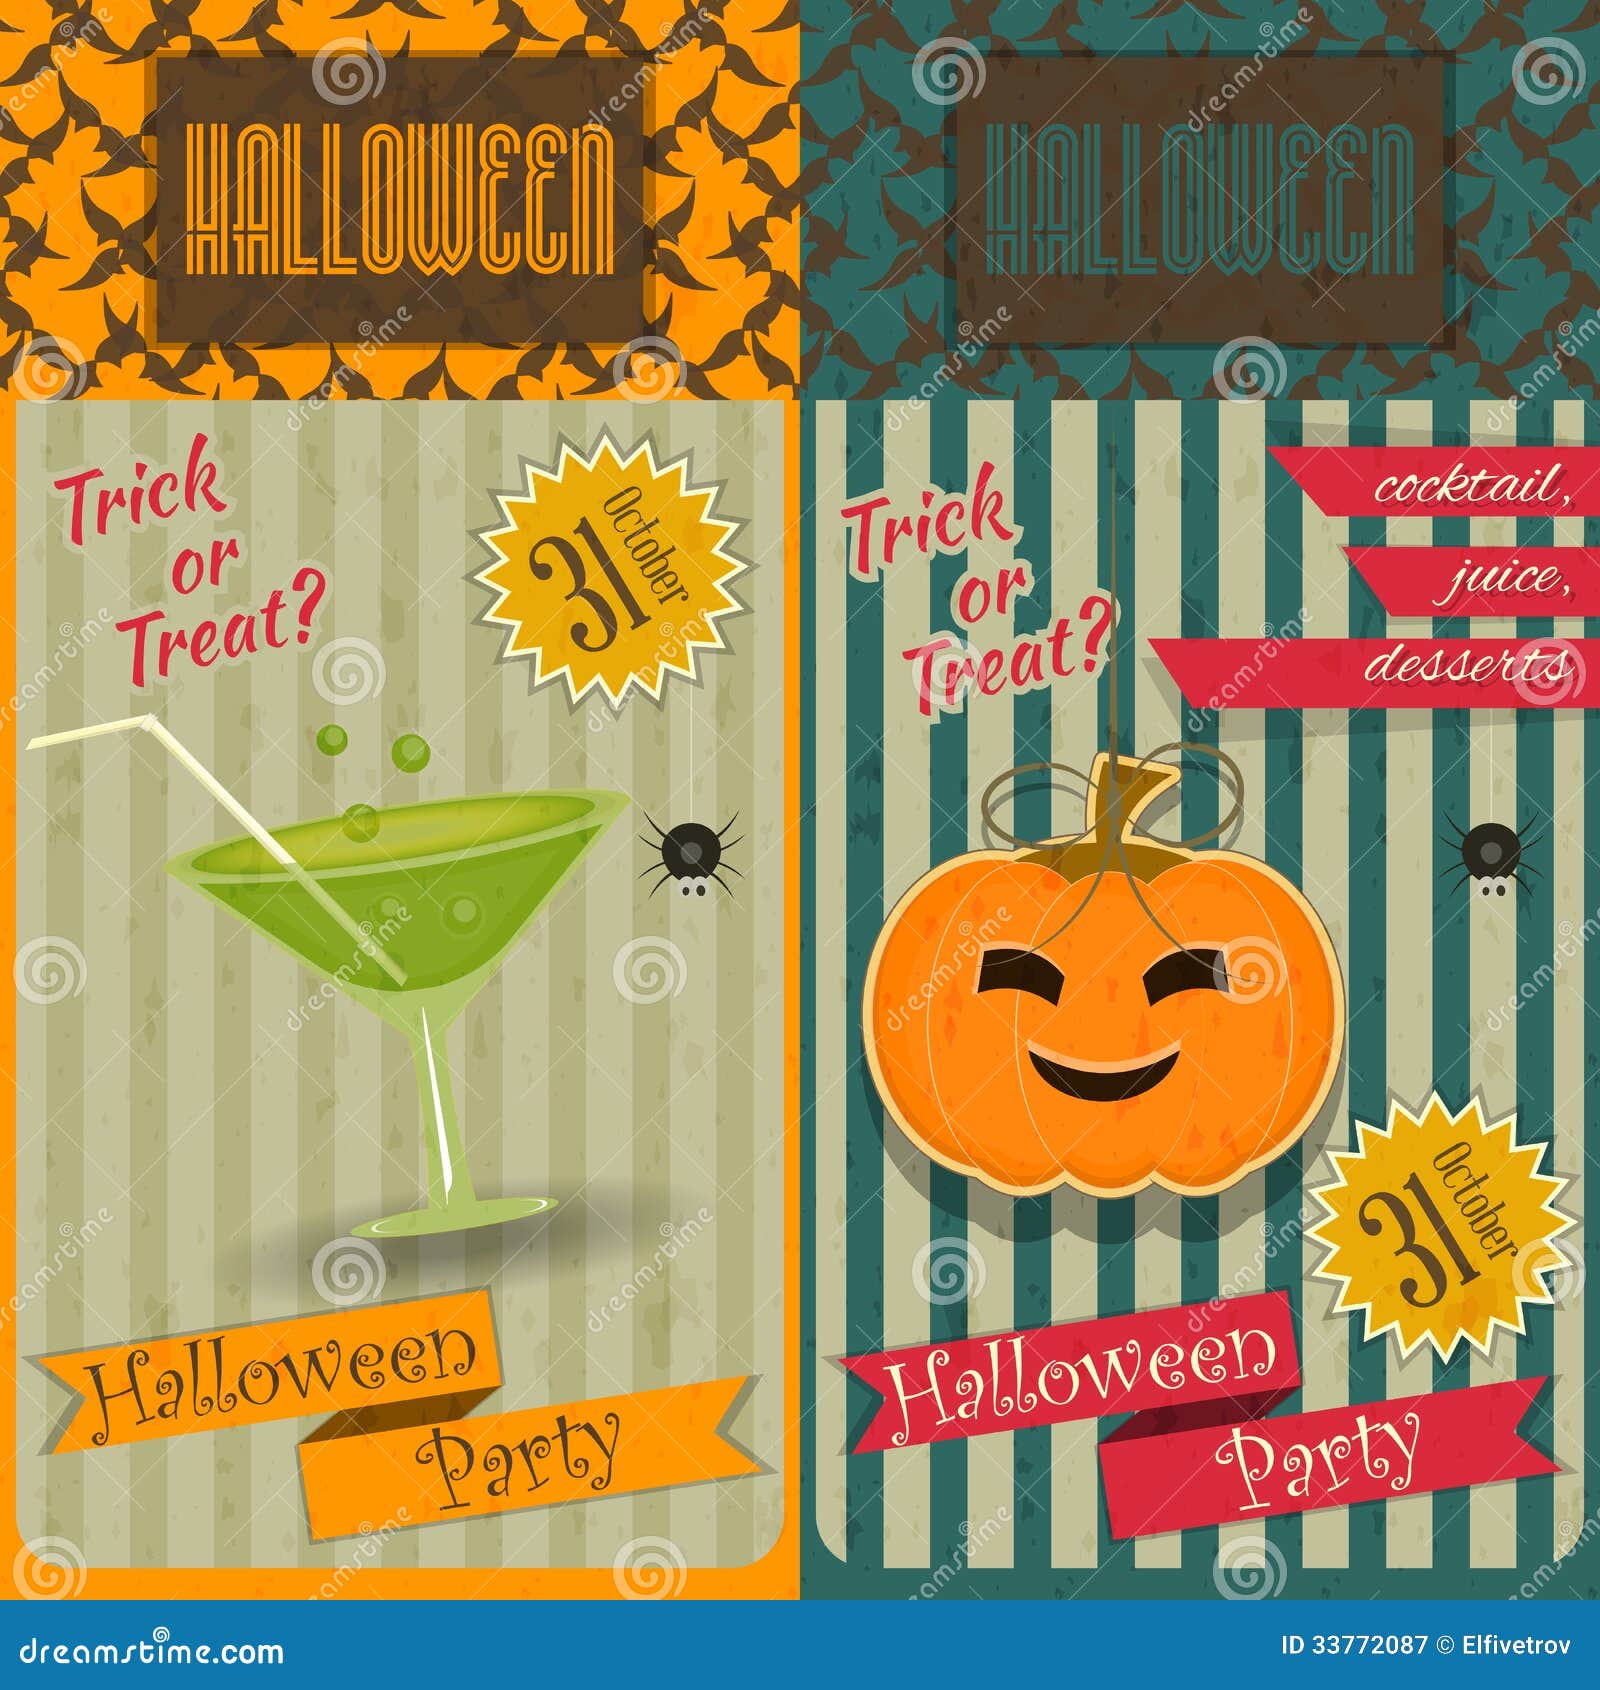 Halloween Party Invitation stock vector. Illustration of autumn - 33772087